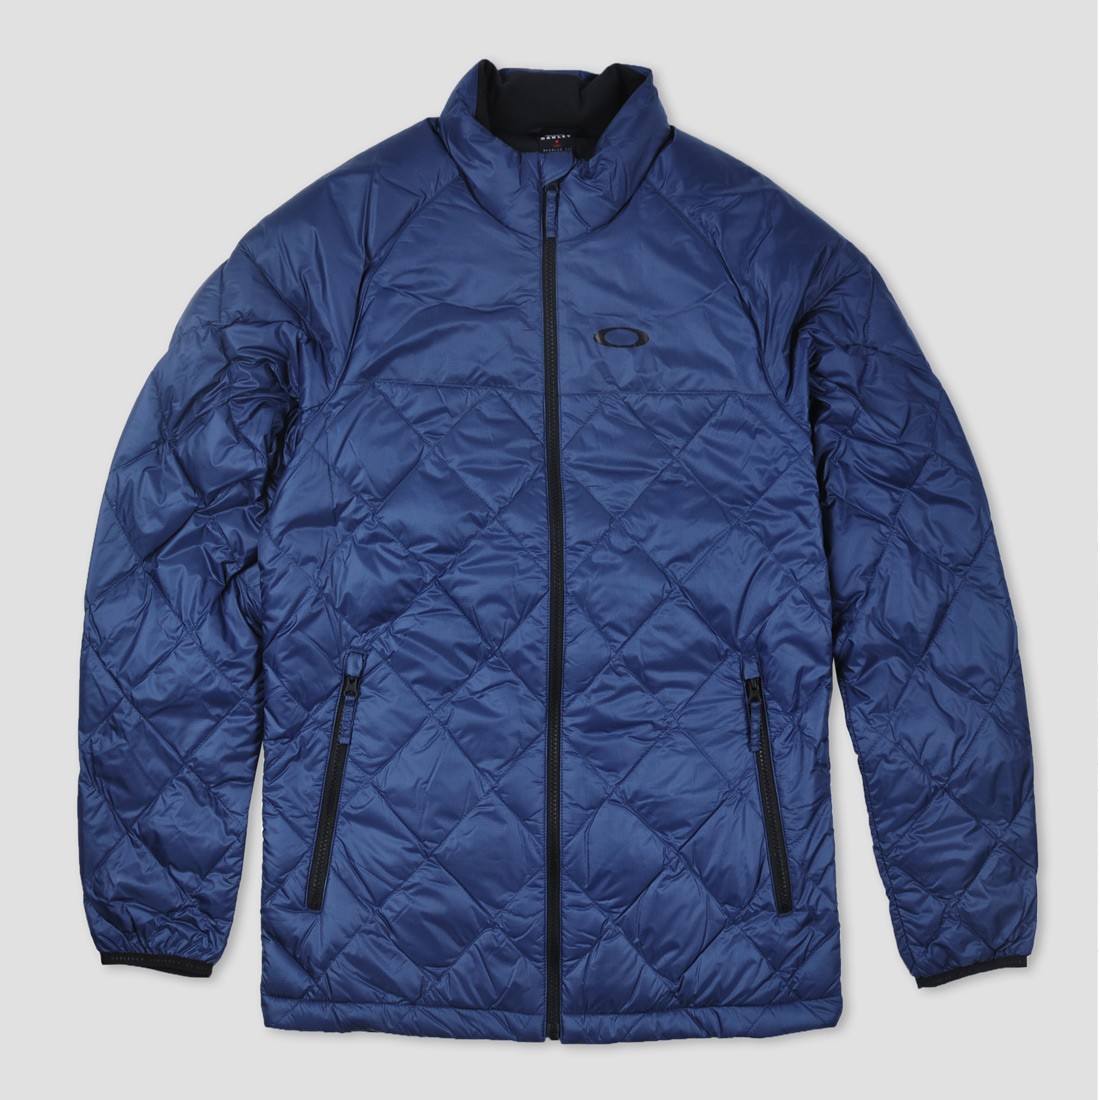 Oakley jackets online | Oakley Redtail 2 Down Jacket Blue Shade